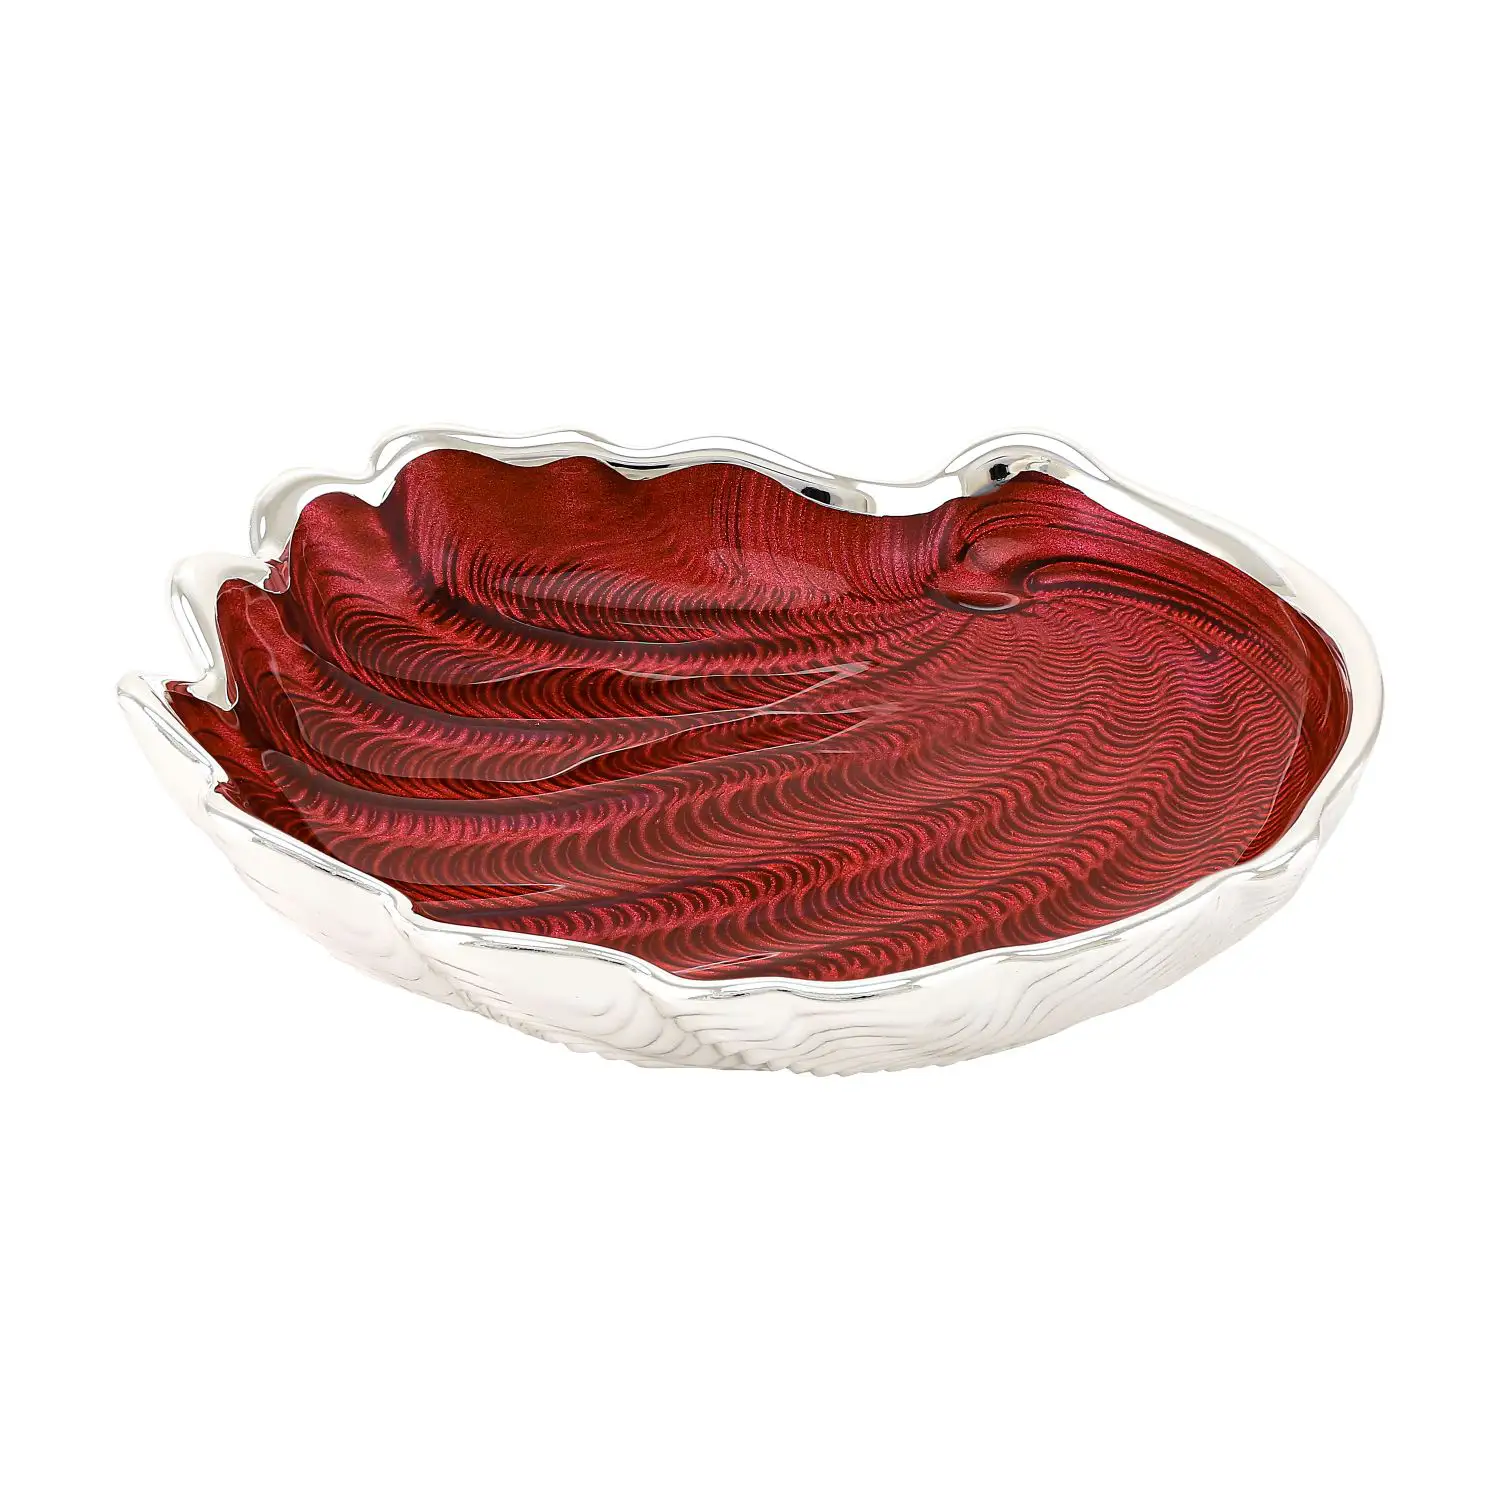 Тарелка стеклянная CONCHIGLIA (цвет красный) диаметр 15 см тарелка стеклянная conchiglia цвет бледно розовый диаметр 15 см